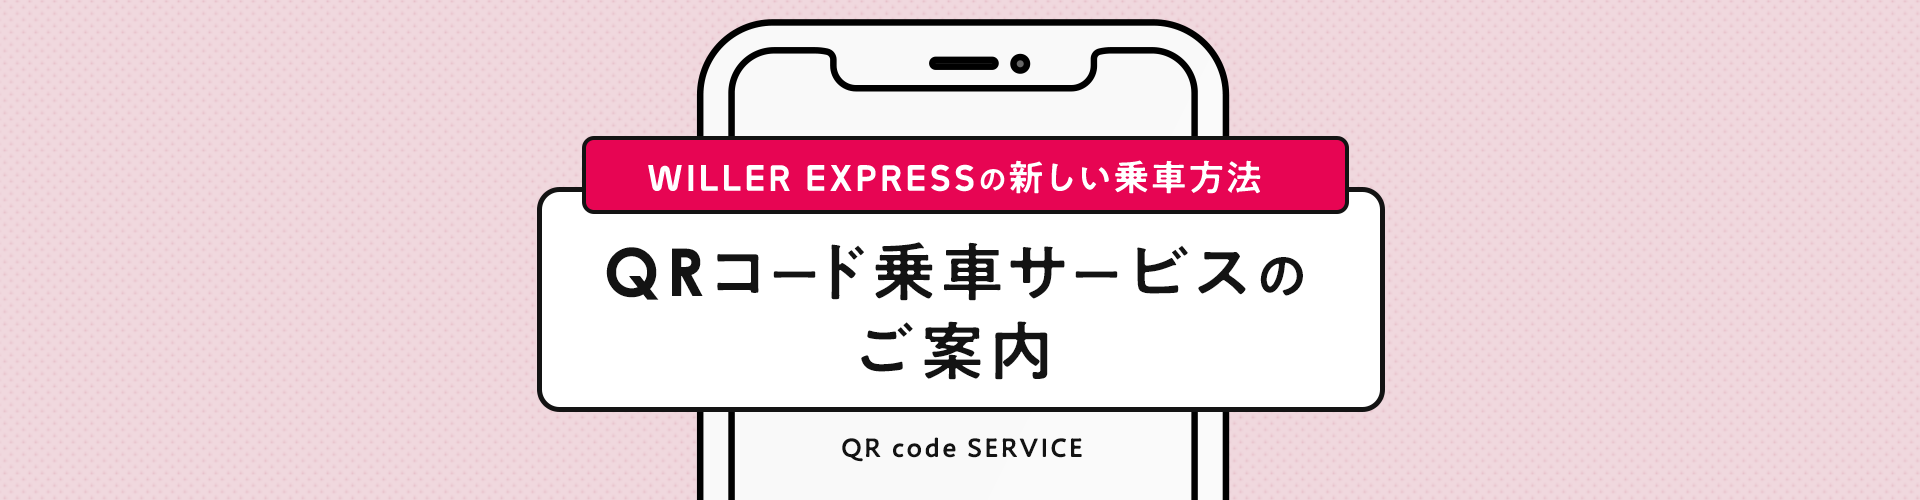 WILLER EXPRESSでは、お客様がよりスムーズにバスへご乗車していただけるよう一部路線においてQRコードによる乗車受付を開始いたします。